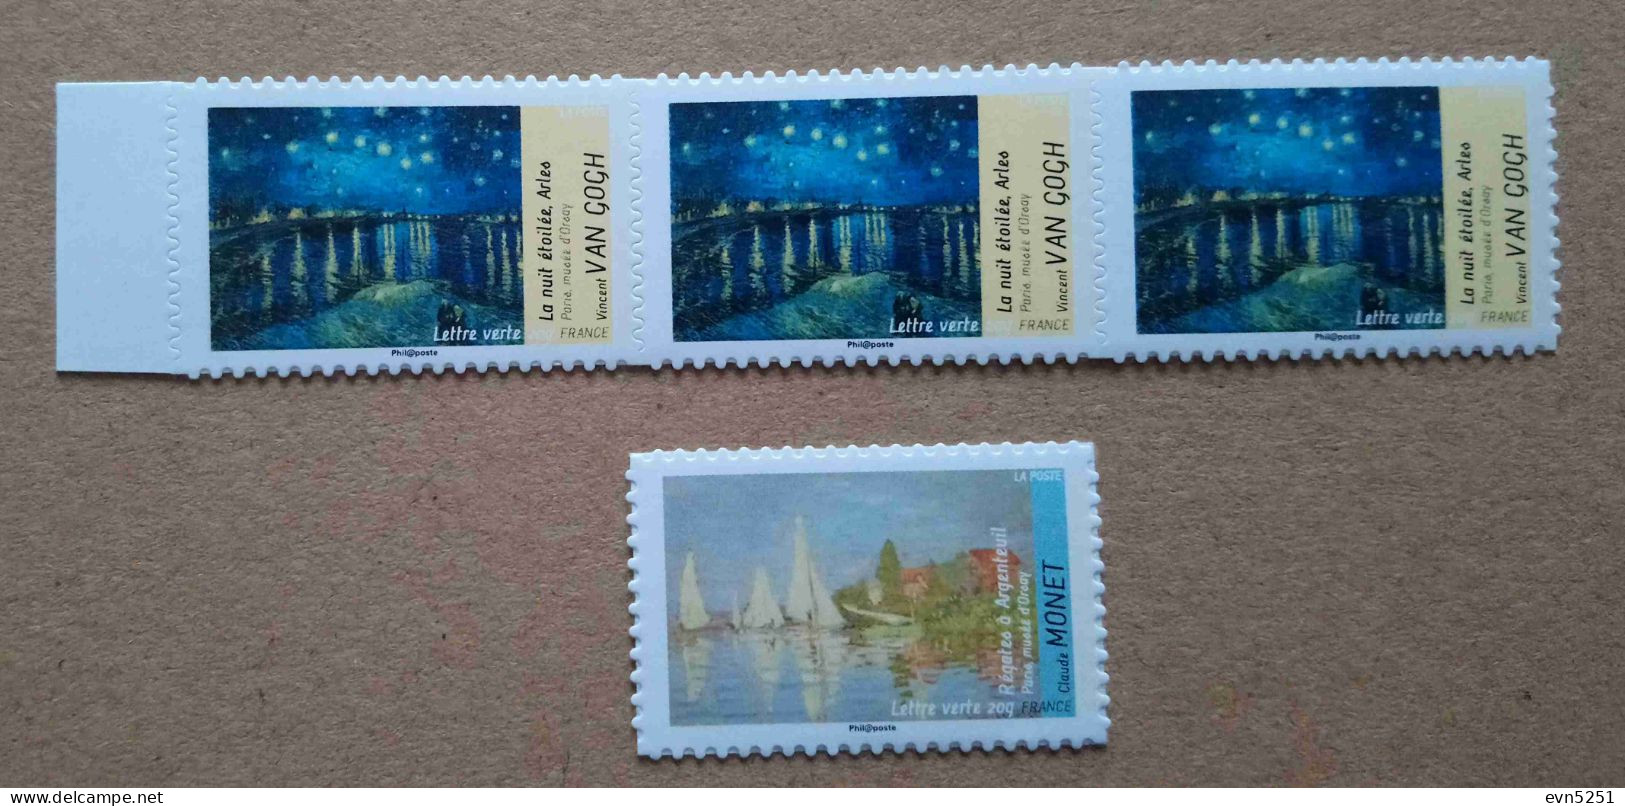 A3-N6 :  Van Gogh - La Nuit étoilée Arles  &  Claude Monet - Régates à Argenteuil  (autocollants / Autoadhésifs) - Unused Stamps